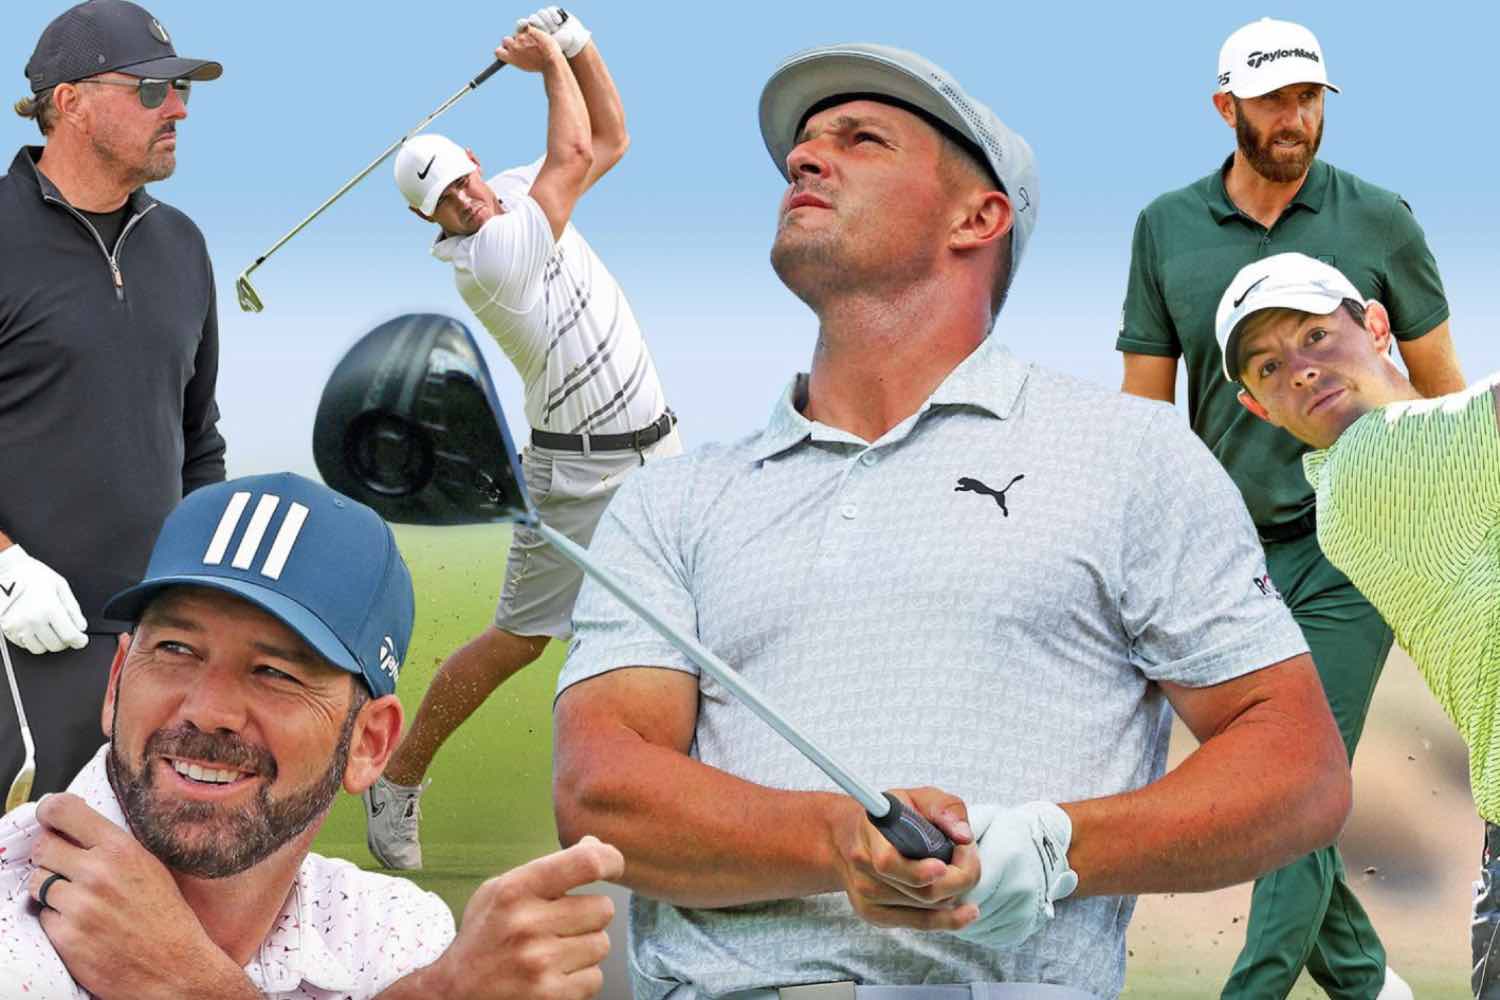 Melhores Jogadores de Golfe da Atualidade - Parte 1!